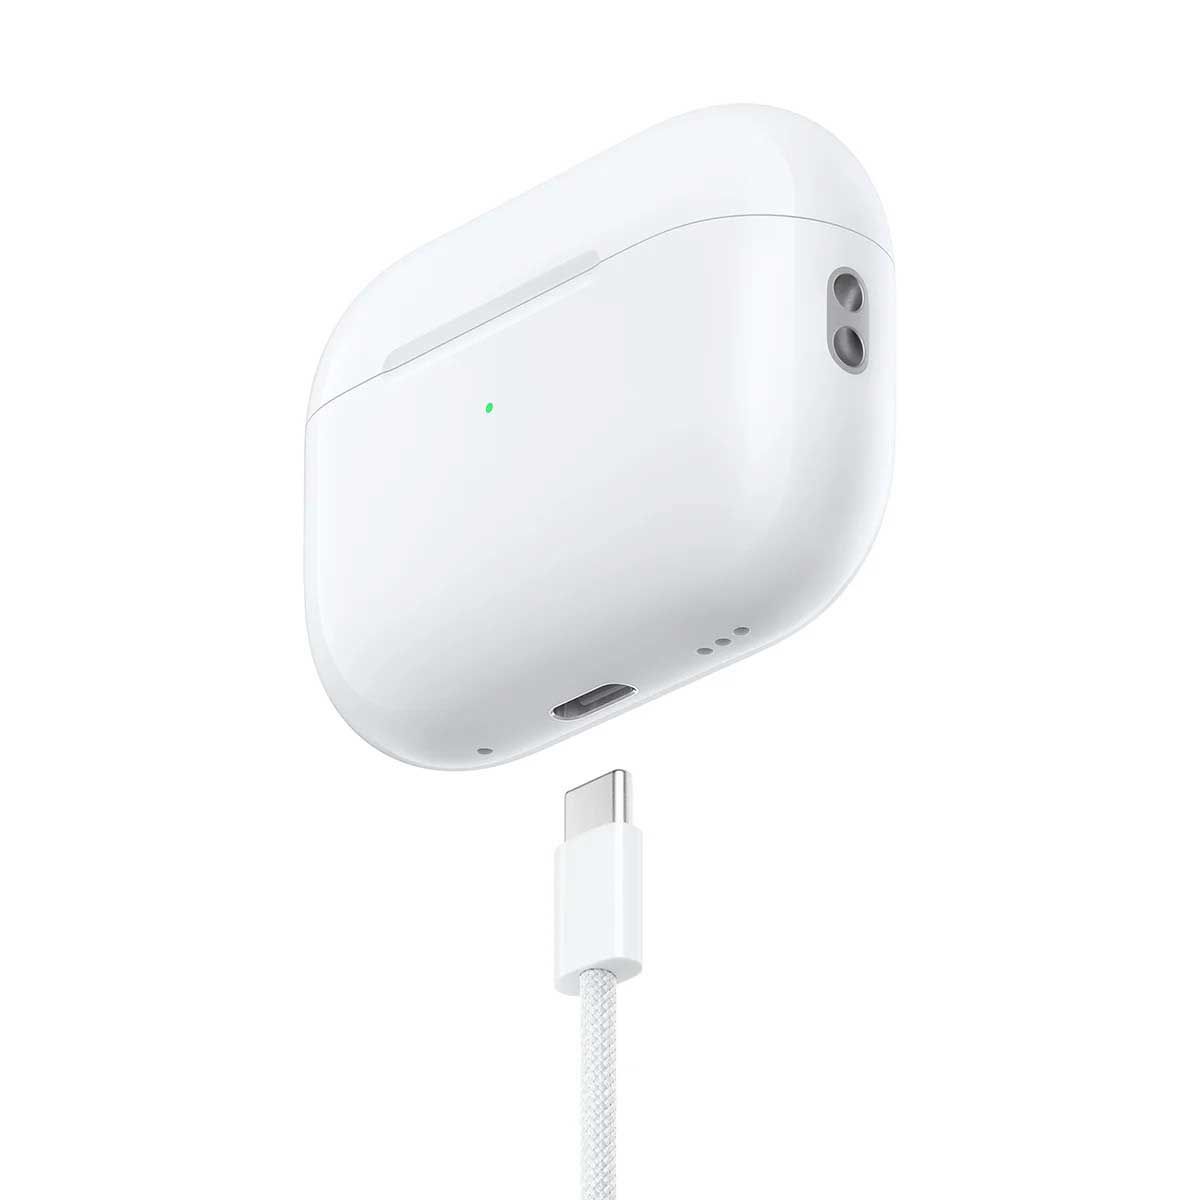 Apple AirPods Pro (รุ่นที่ 2) พร้อมเคสชาร์จ MagSafe (USB-C)